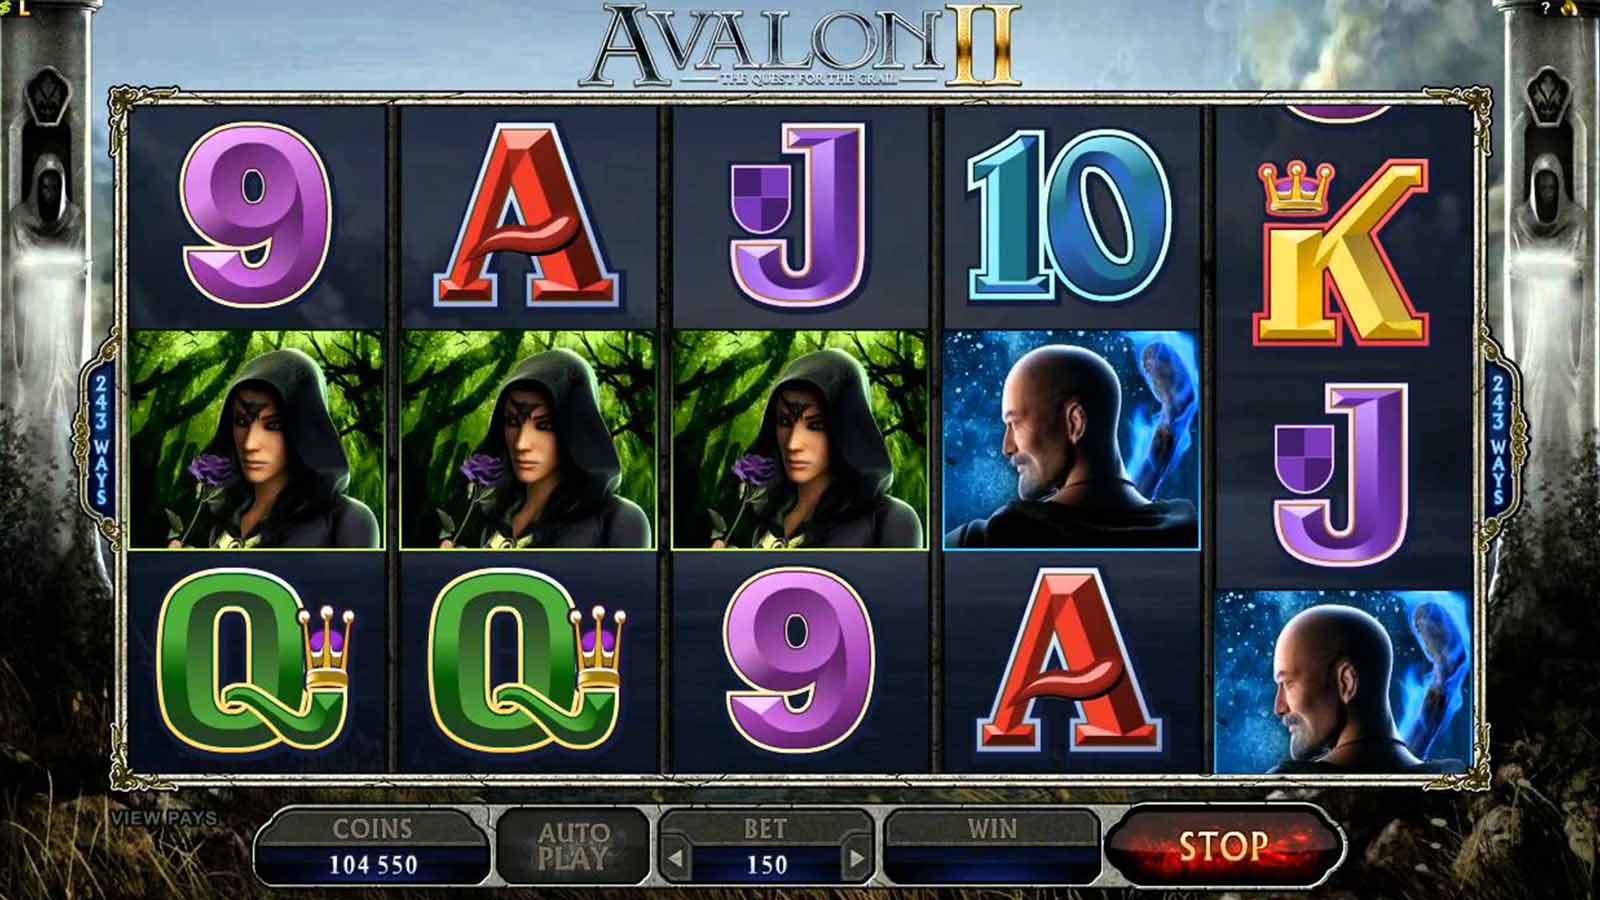 Magic Avalon II slot